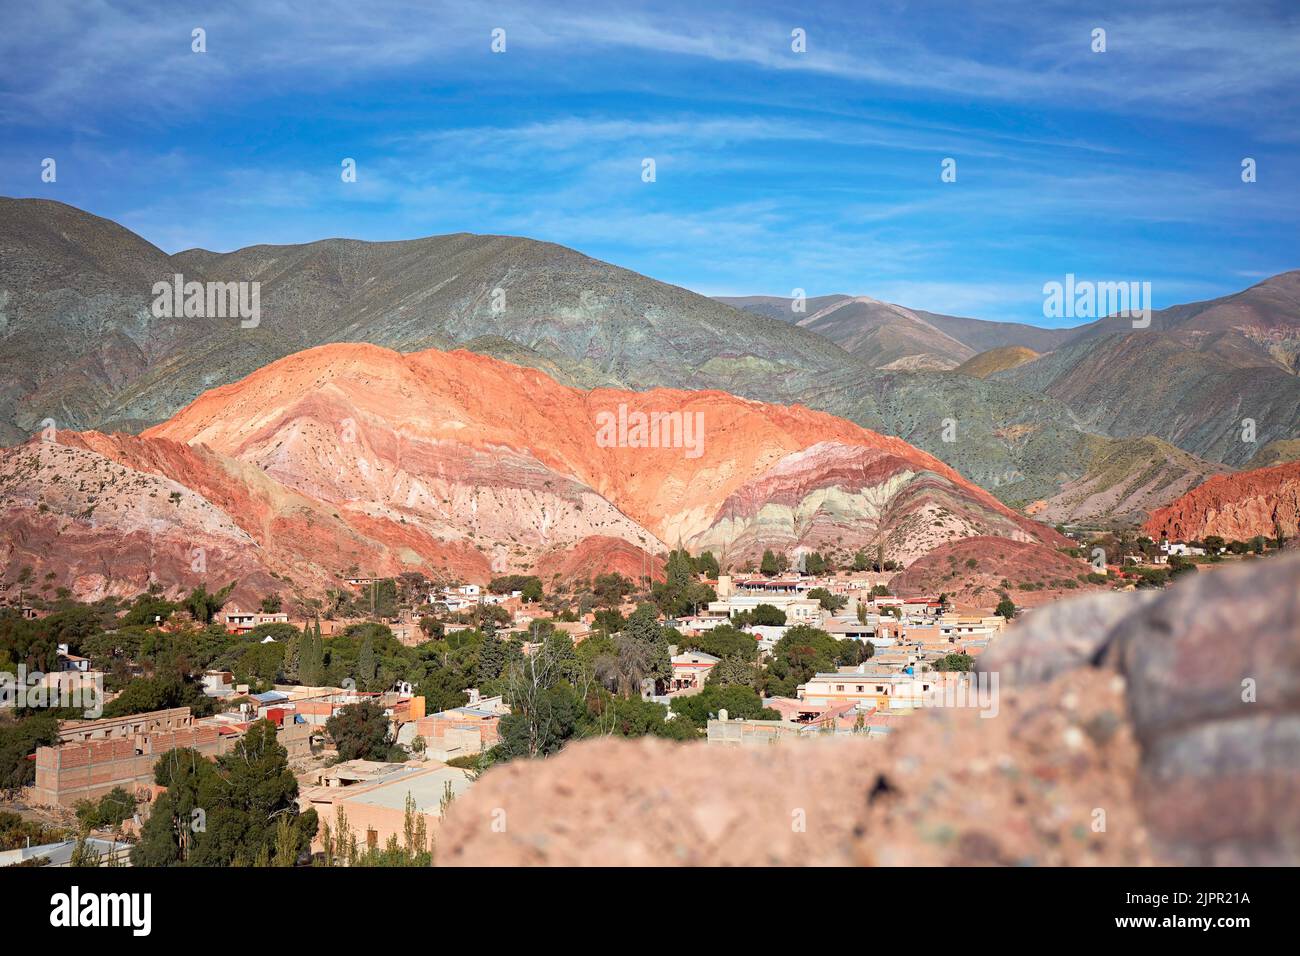 The 'Cerro de los Siete Colores' (Hills of Seven Colors) in Purmamarca, Quebrada de Humahuaca, Jujuy province, Argentina. Stock Photo